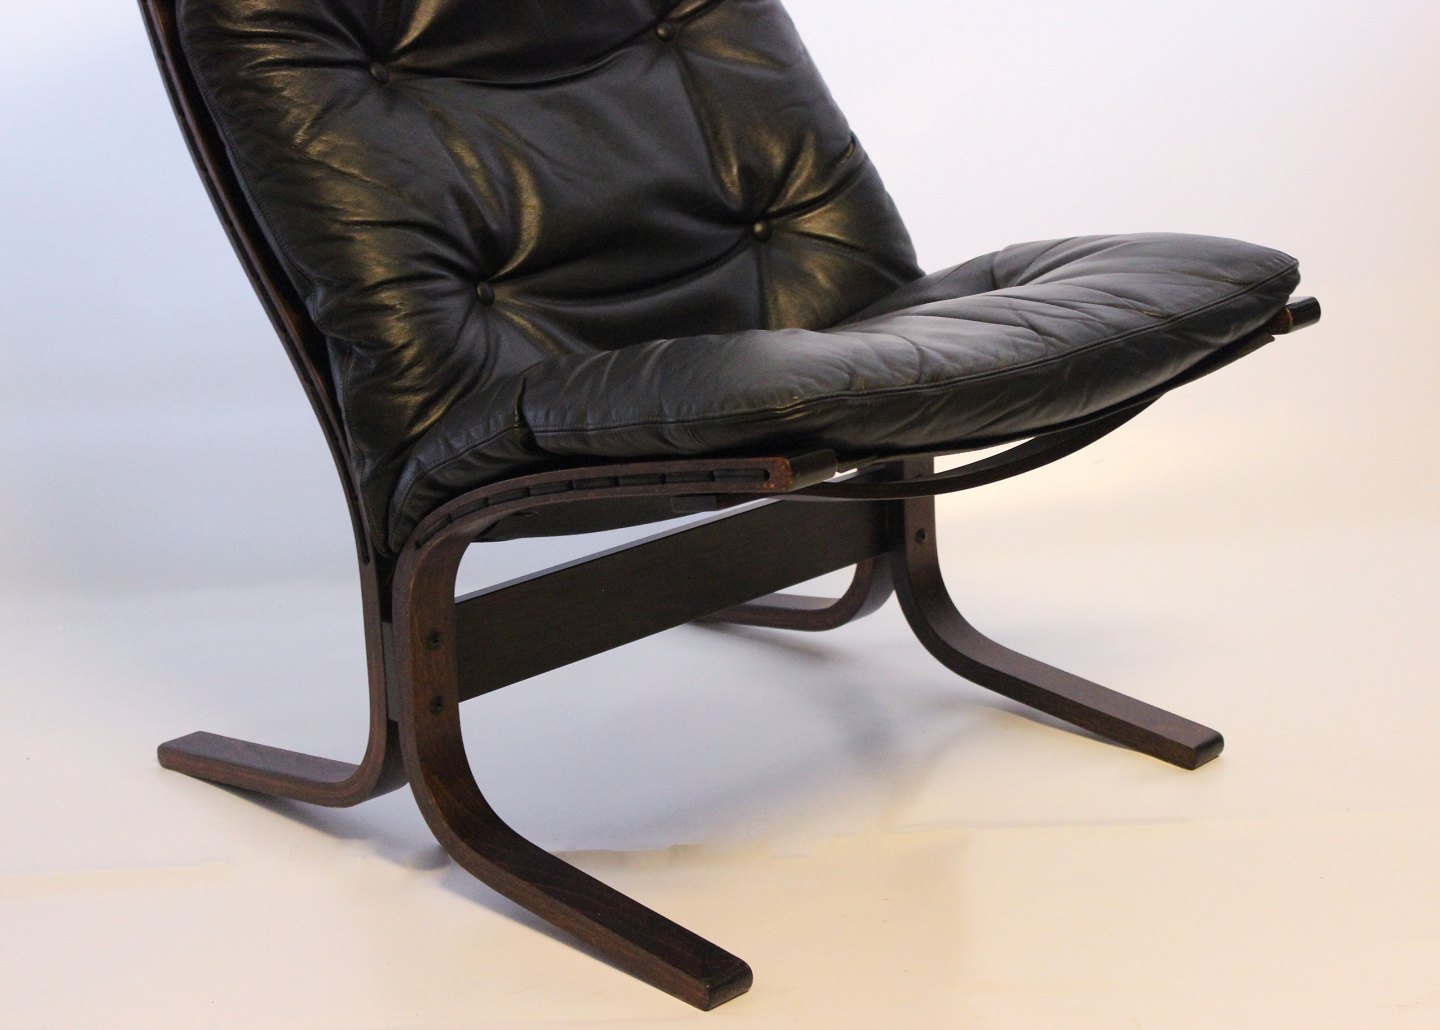 www.Antikvitet.net - Et par høje Siesta lænestole af sort læder og mørkt træ, designet af Ingmar og fremstillet h